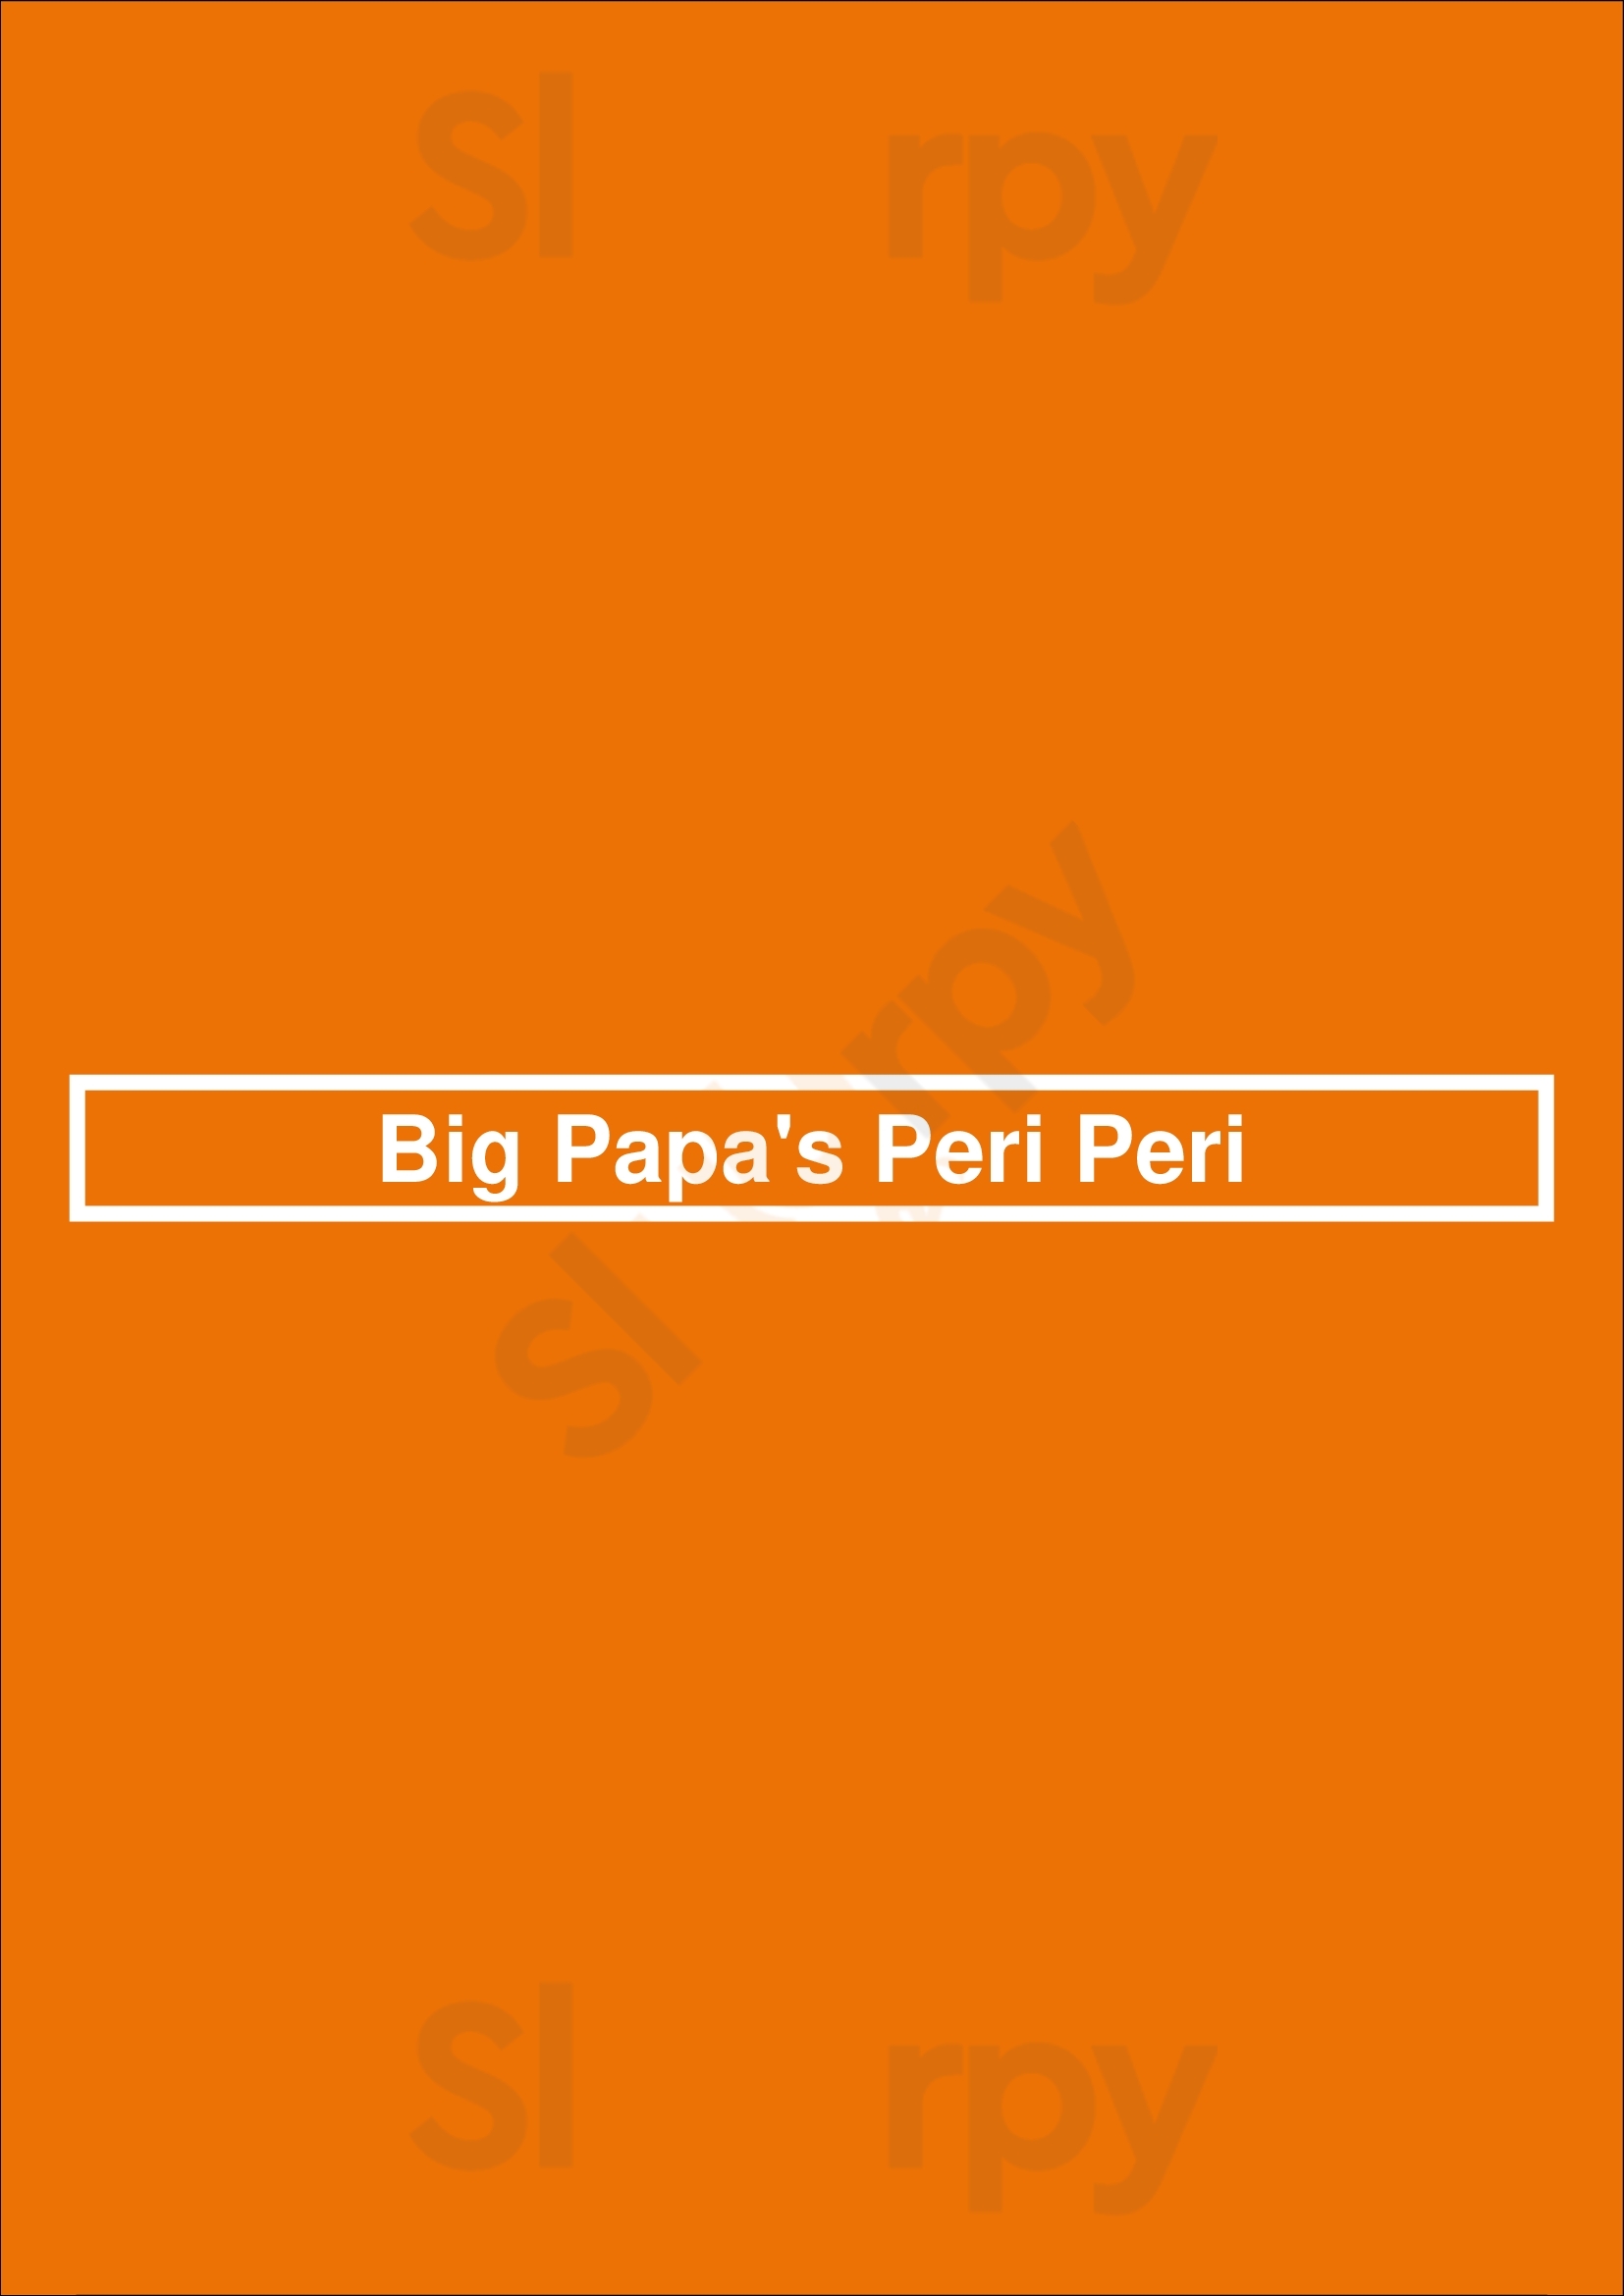 Big Papa's Peri Peri London Menu - 1